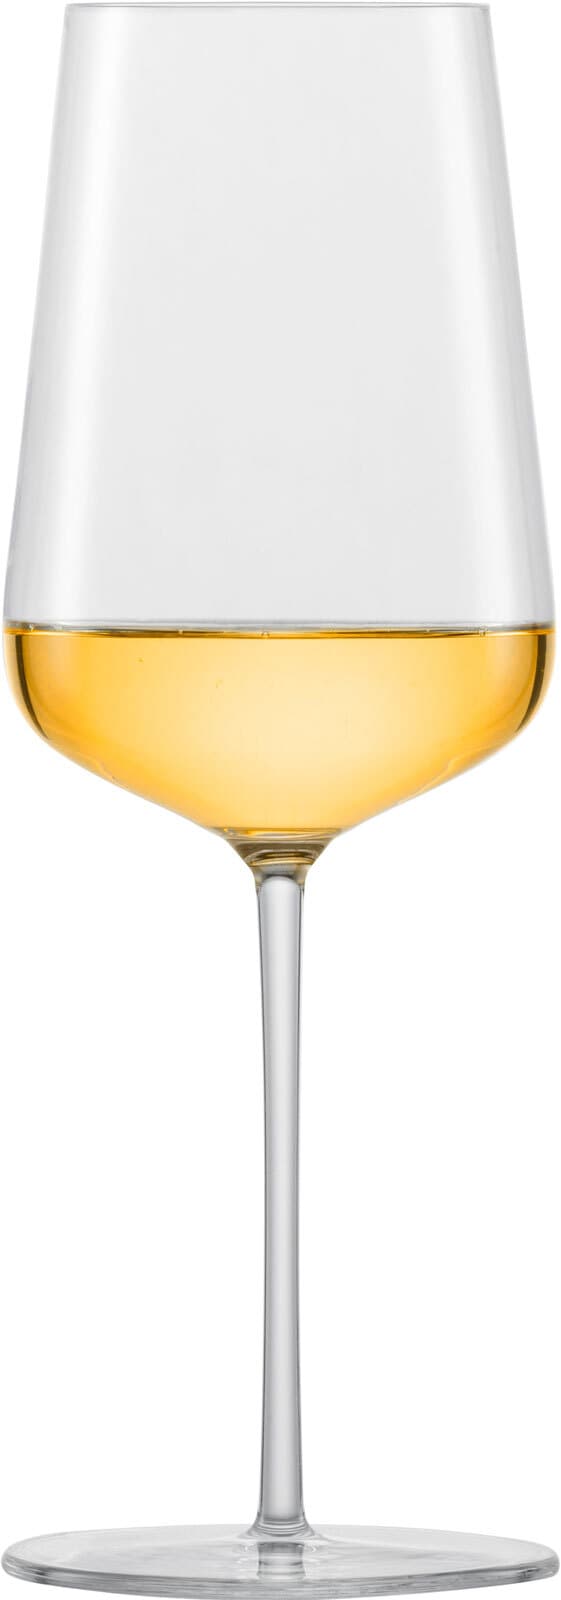 ZWIESEL GLAS Chardonnayglas VERVINO 2er Set - je 487 ml